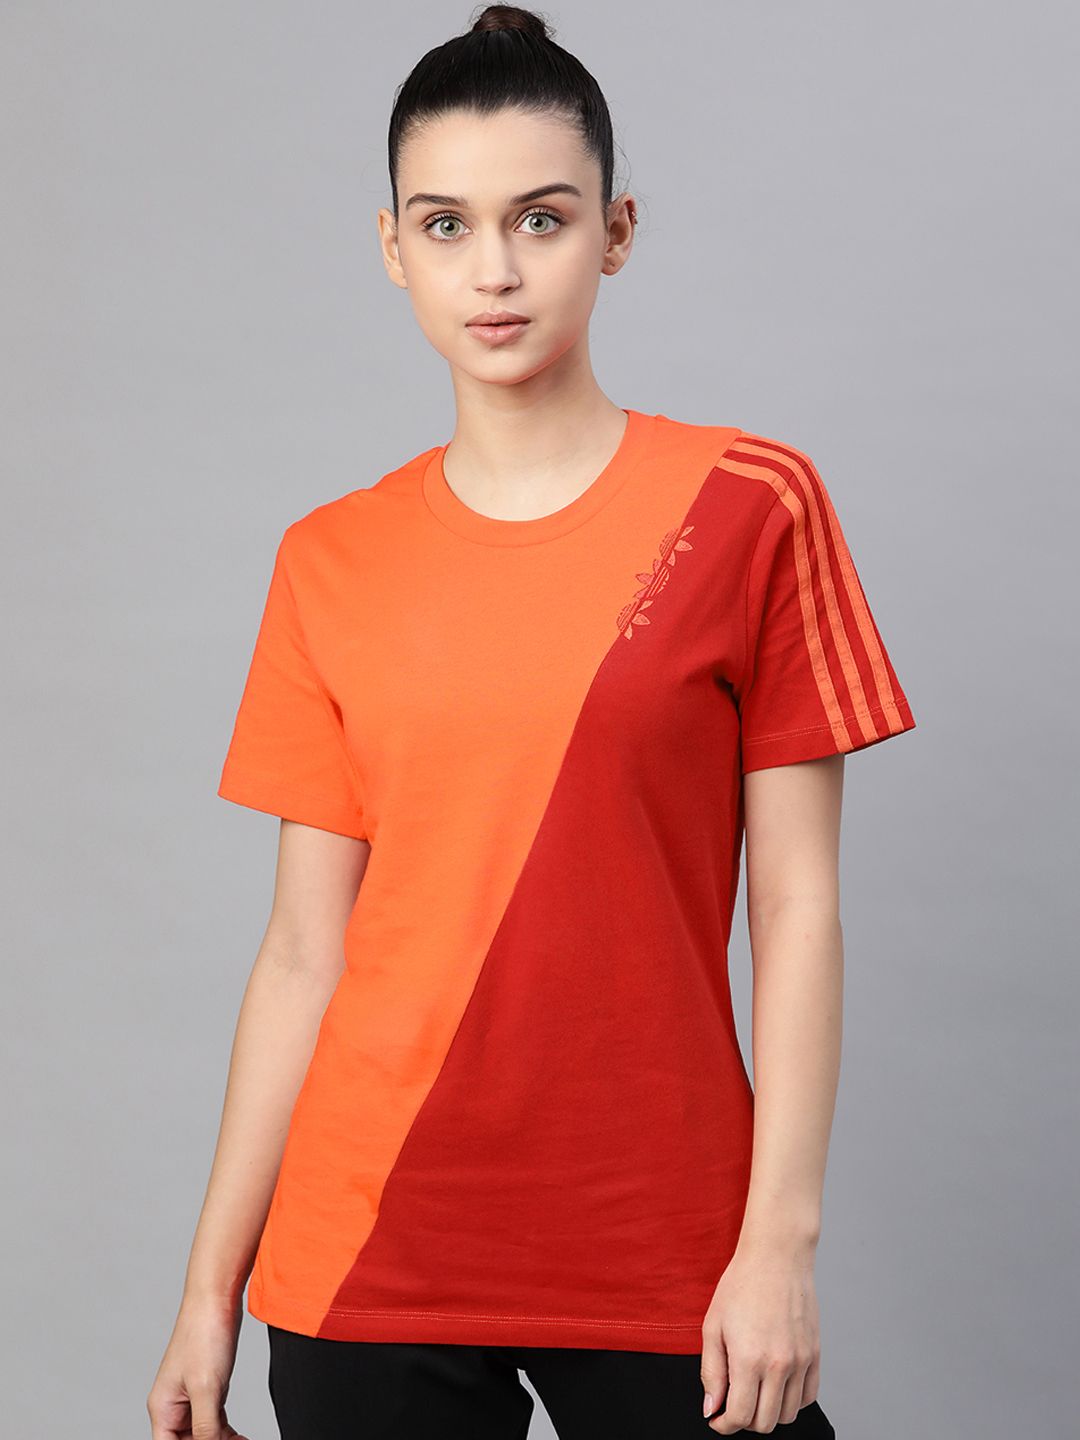 ADIDAS Originals Women Orange  Red Pure Cotton Adicolor Sliced Trefoil Regular Pure Cotton T-shirt Price in India